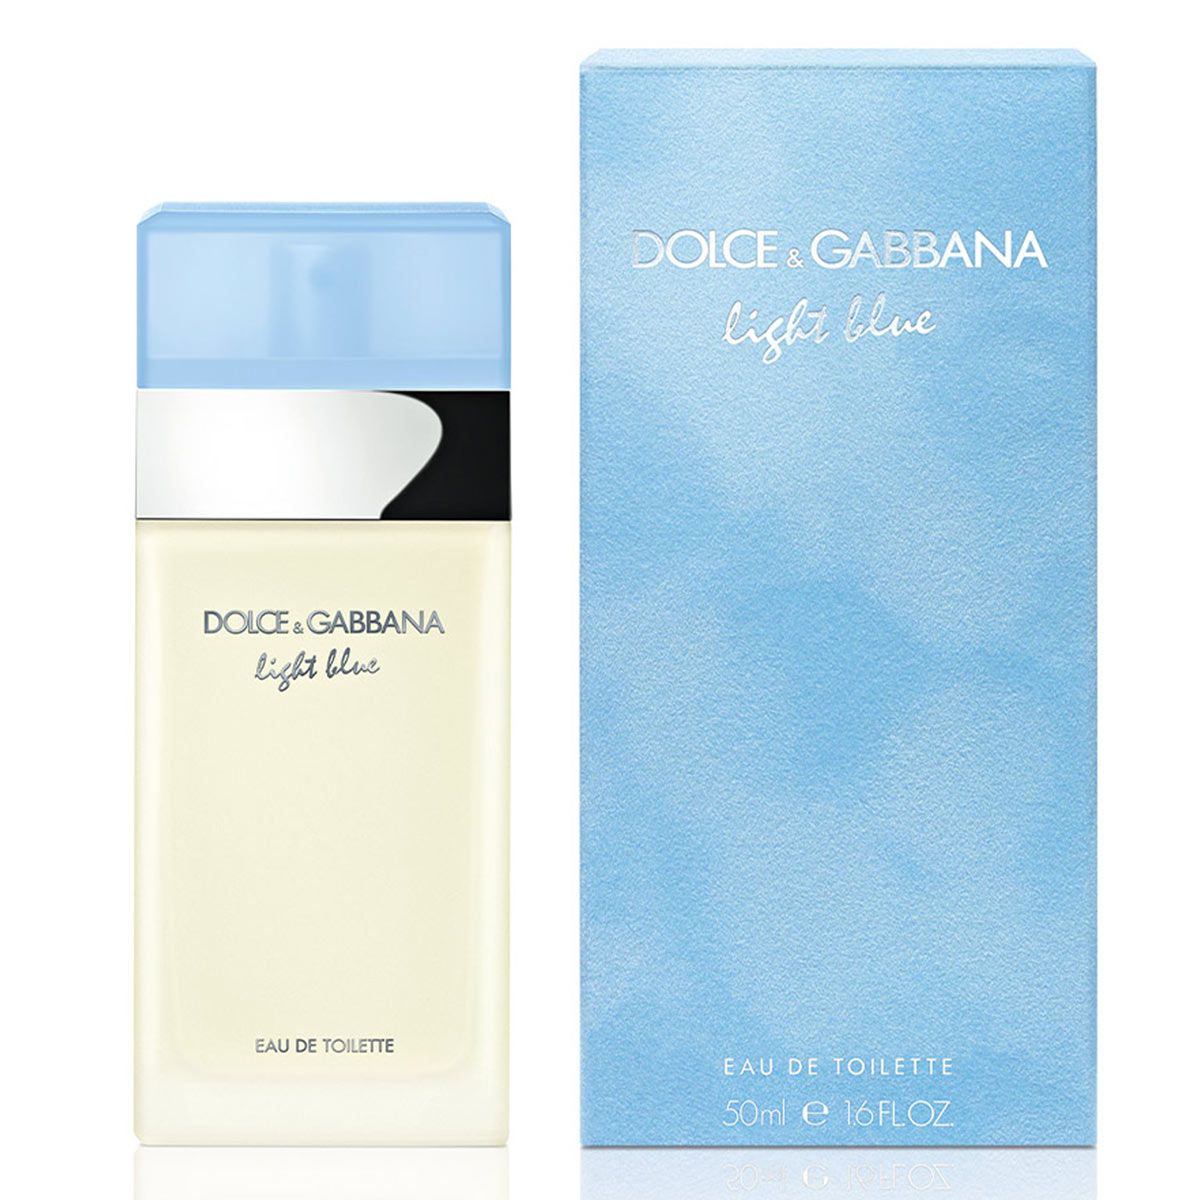 Arriba 82+ imagen perfume de dolce gabbana light blue